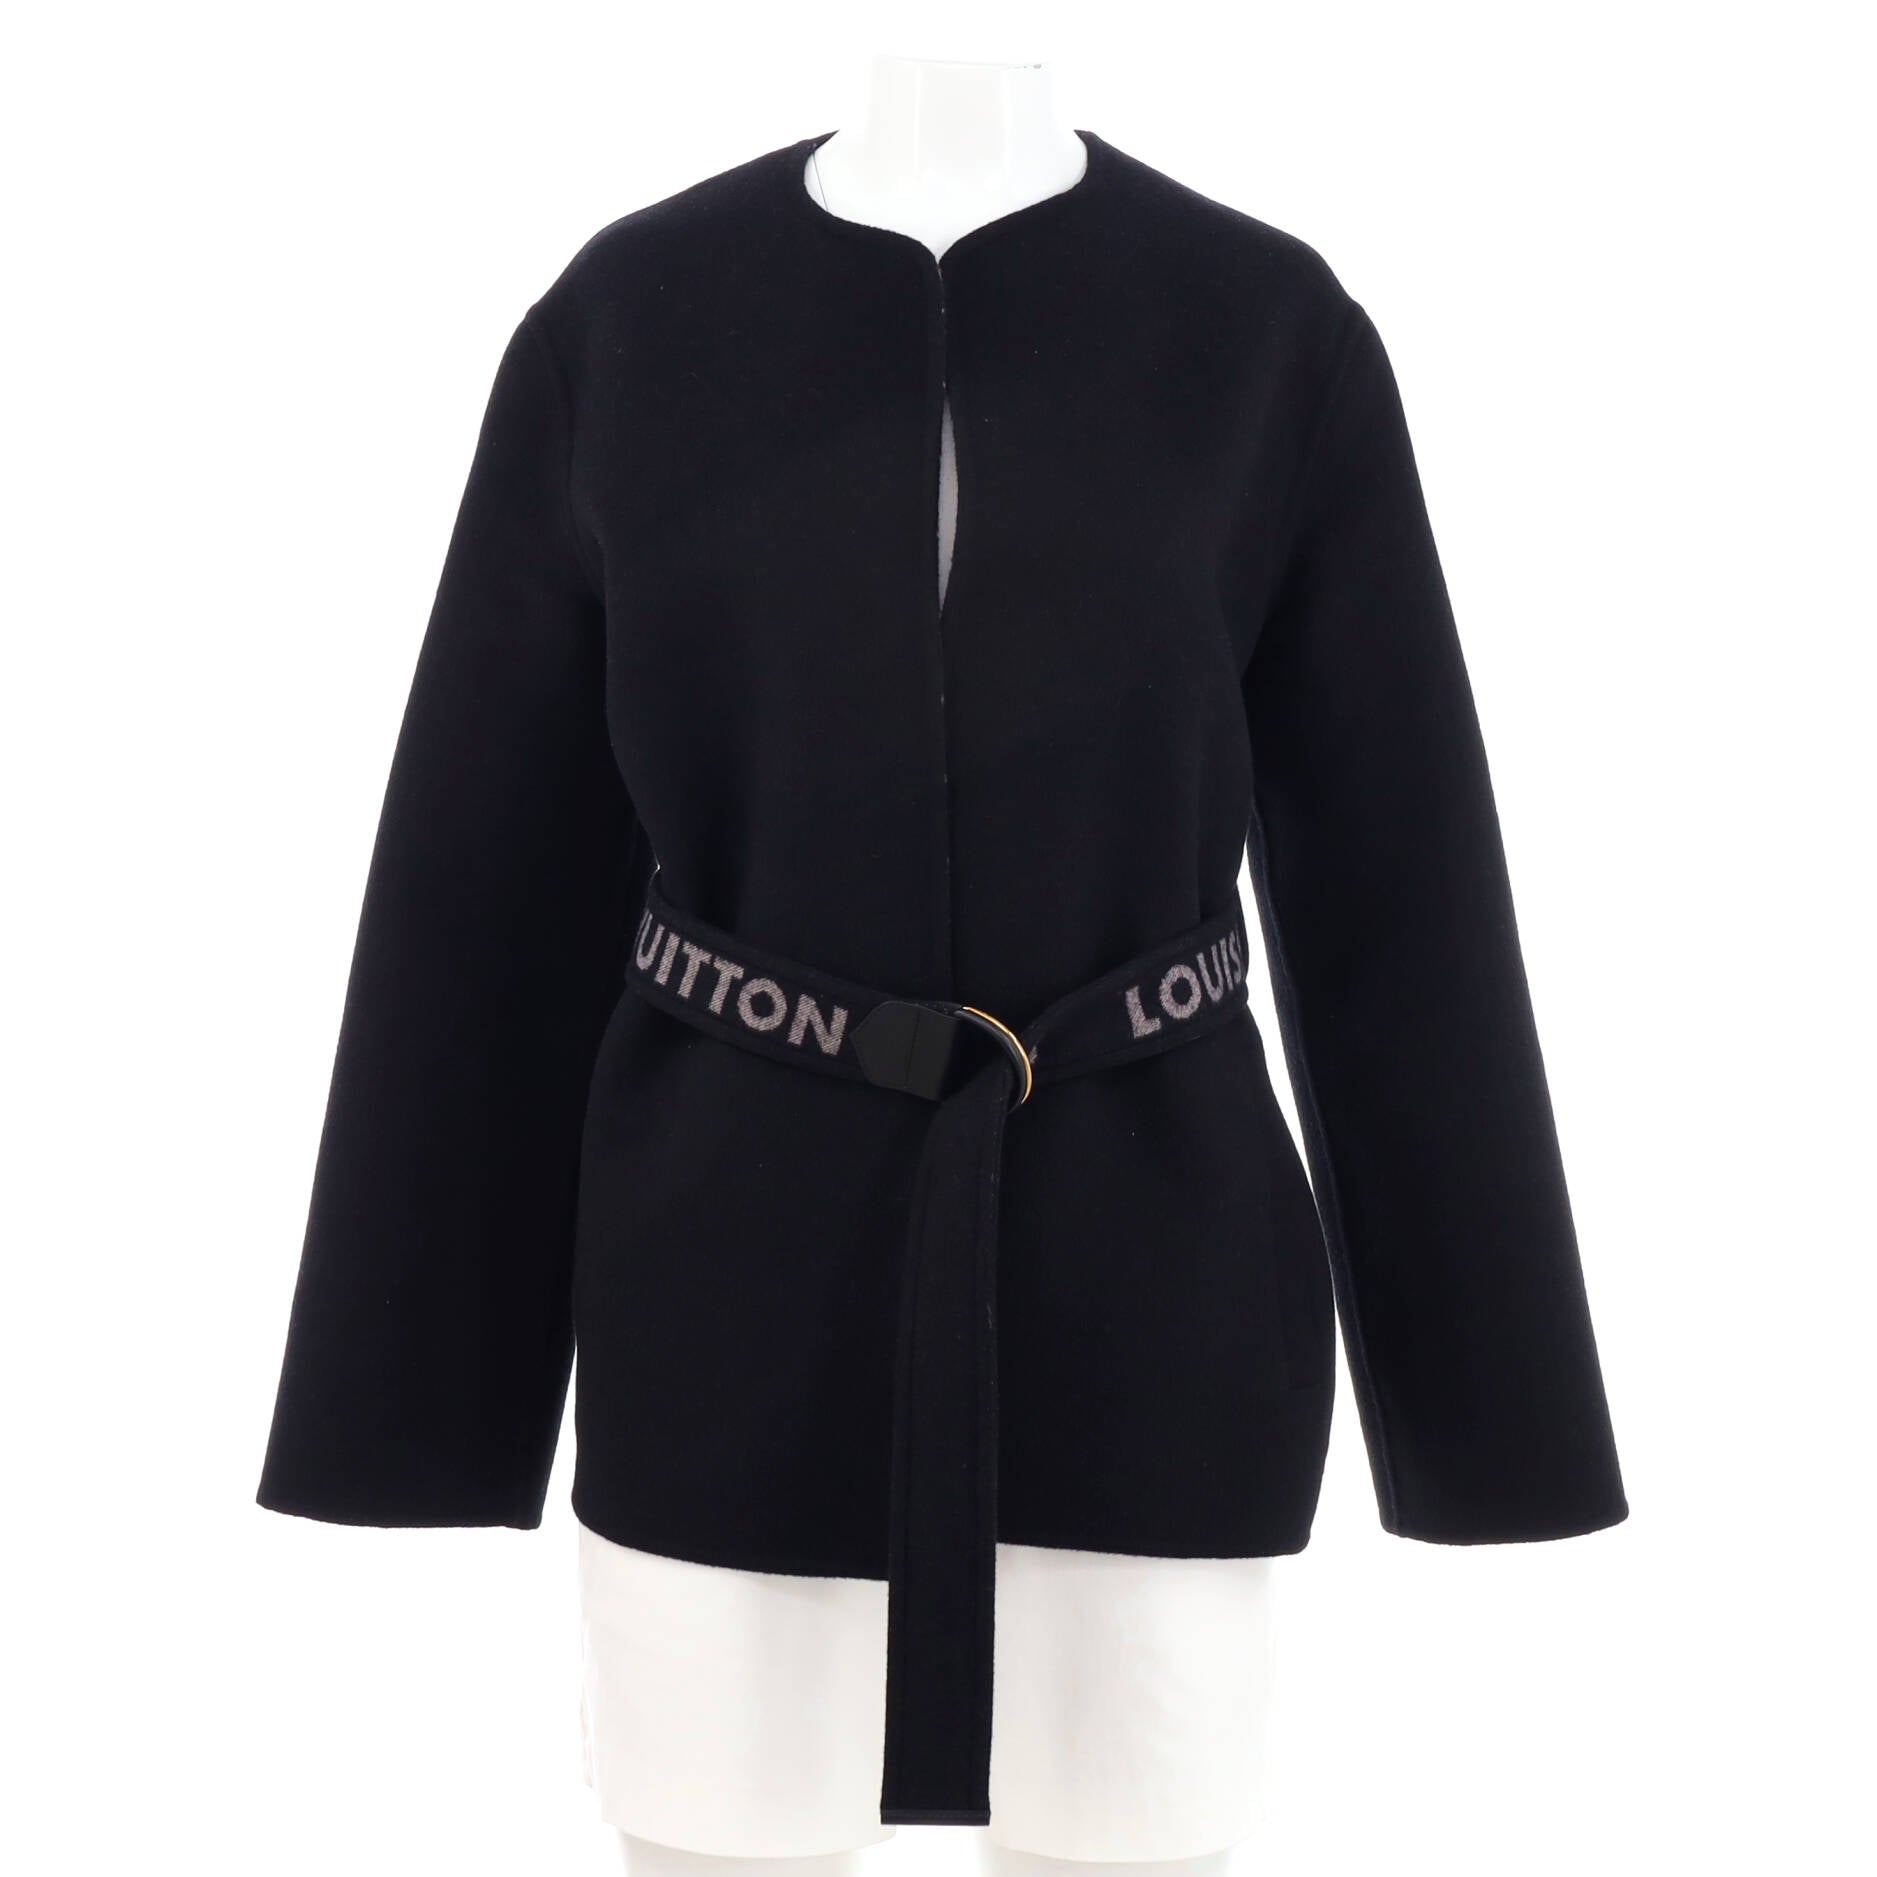 Louis Vuitton Signature Short Hooded Wrap Coat, Beige, 40